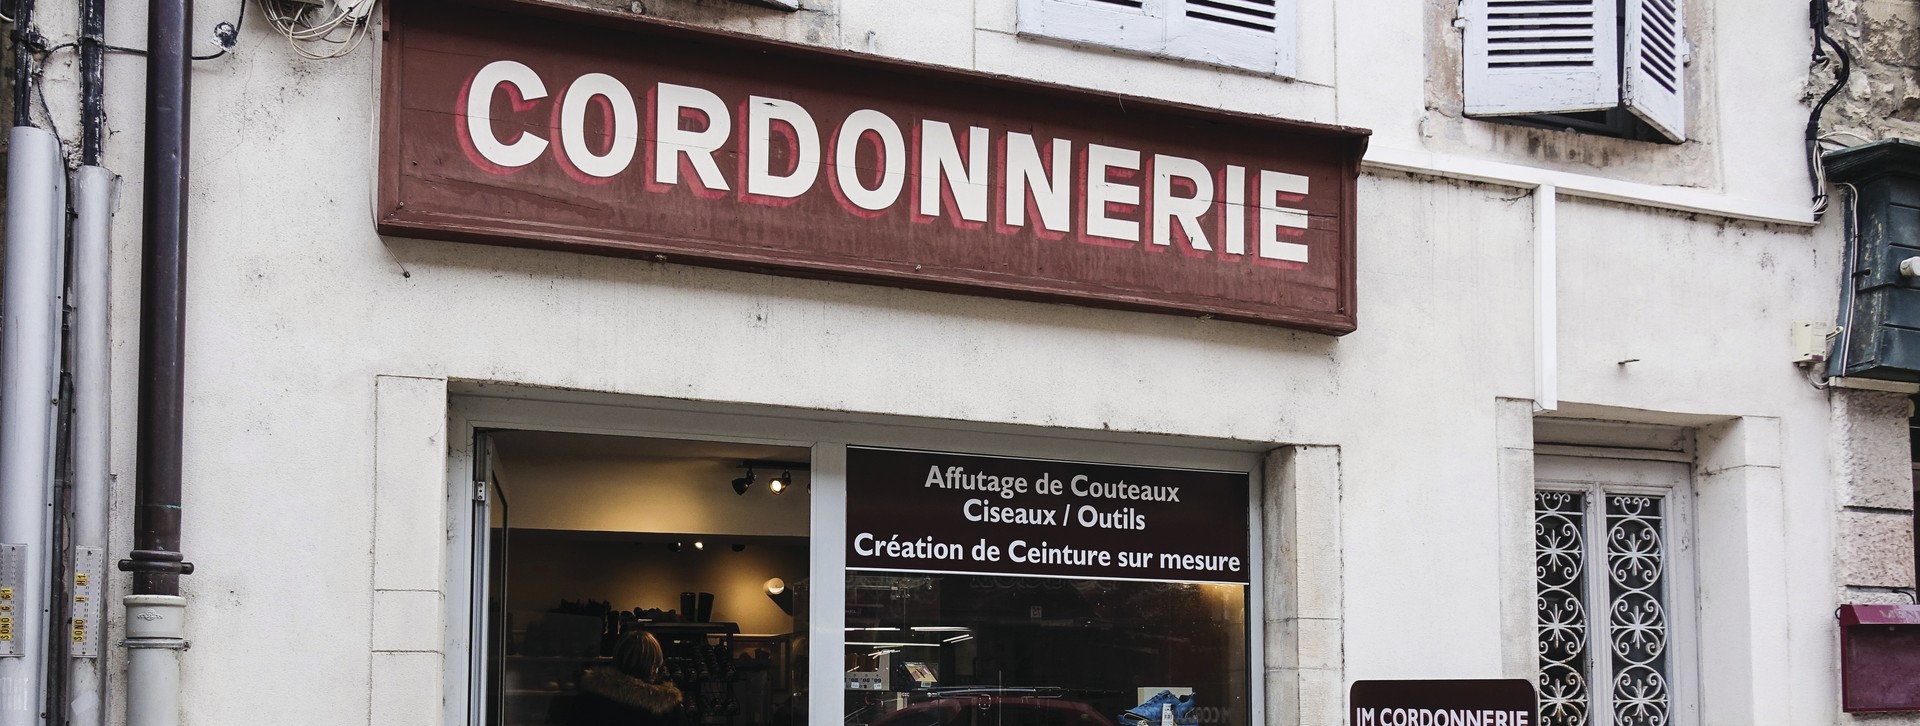 Boutique JM CORDONNERIE - Côte-d'Or